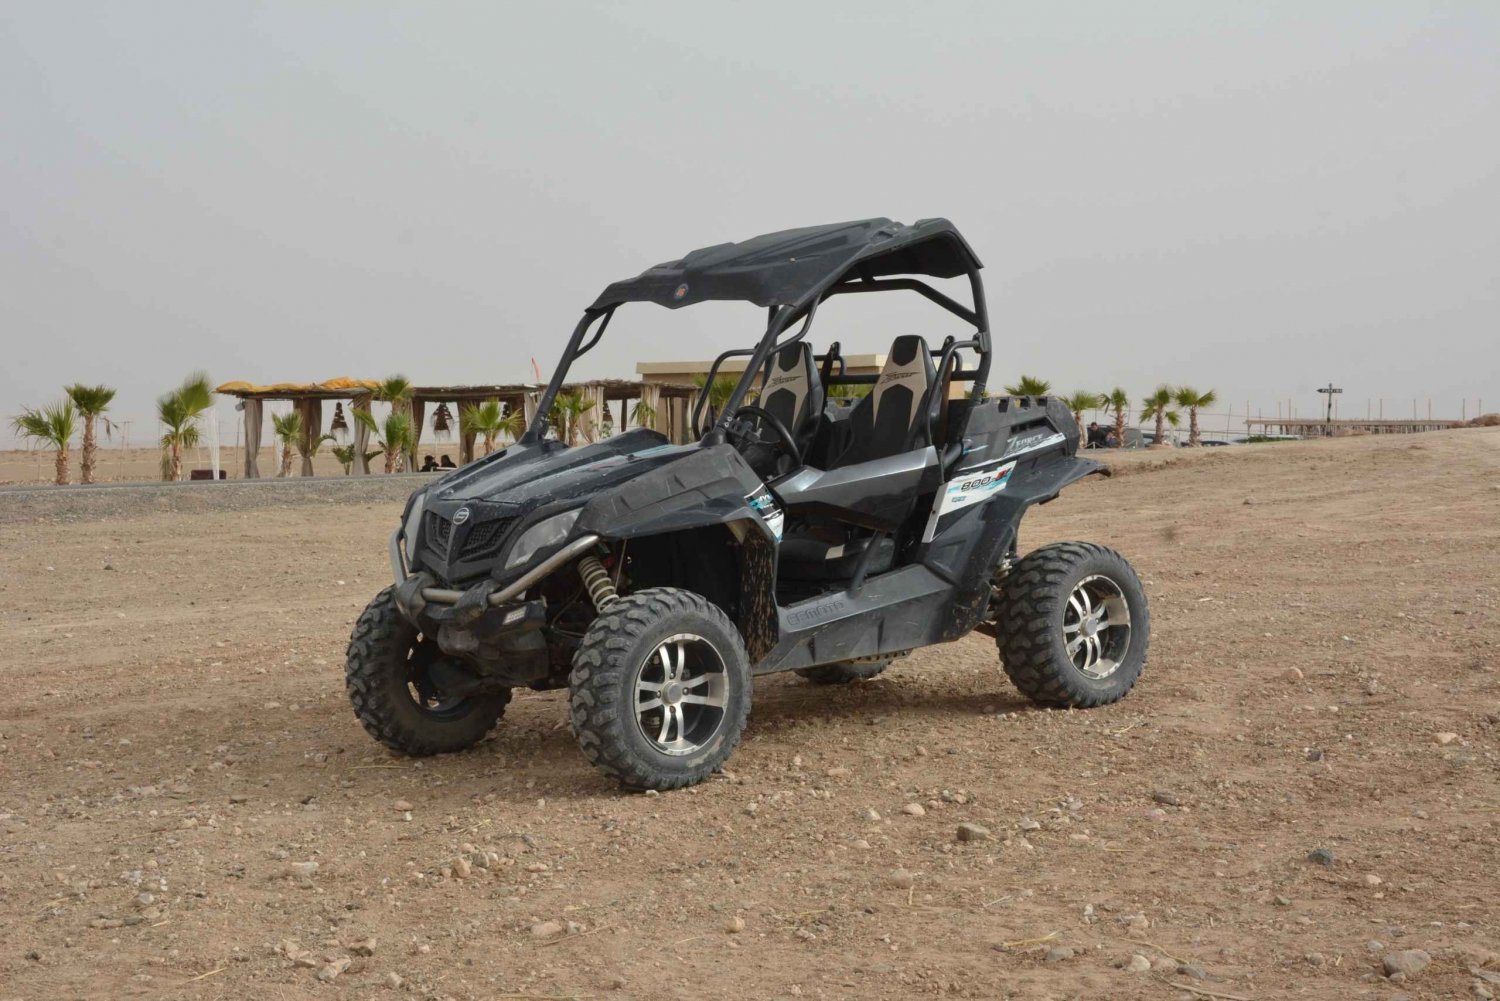 Marrakesch Buggy 1000cc Ausflug in der Agafay Wüste und Tee